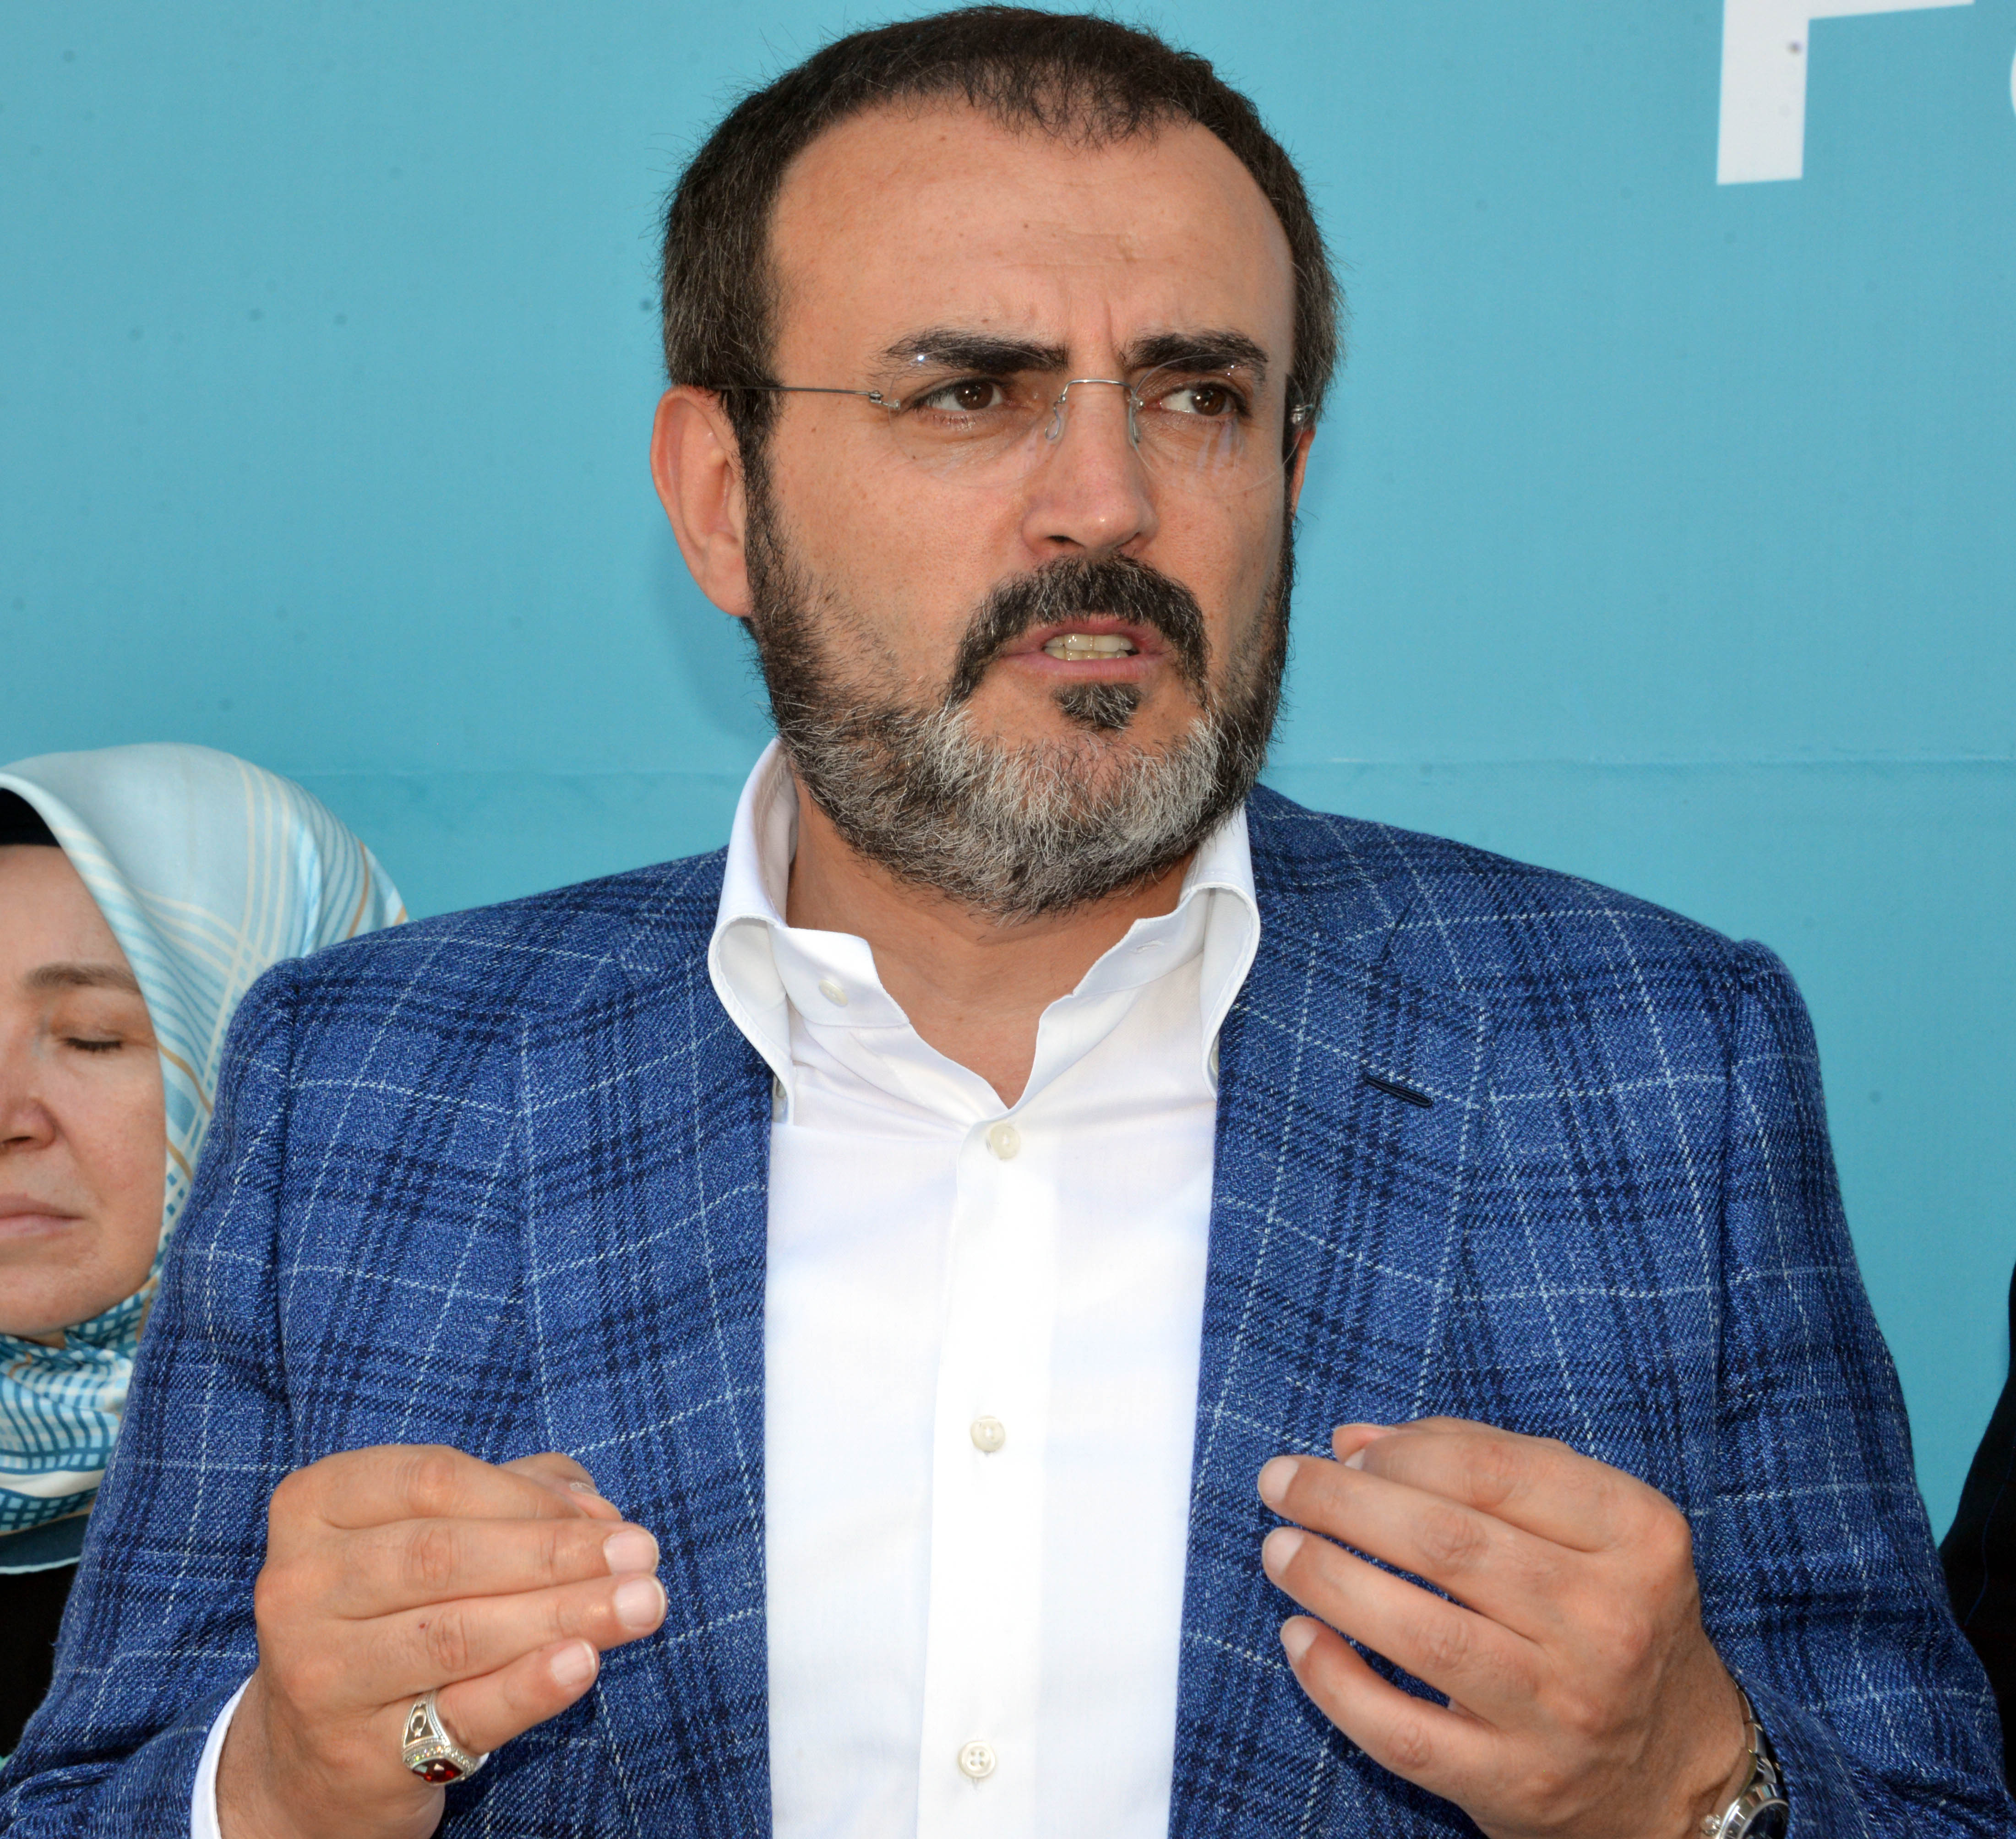 AKP'li Mahir Ünal CHP'ye sataştı: Yaptıkları apaçık düşmanlıktır